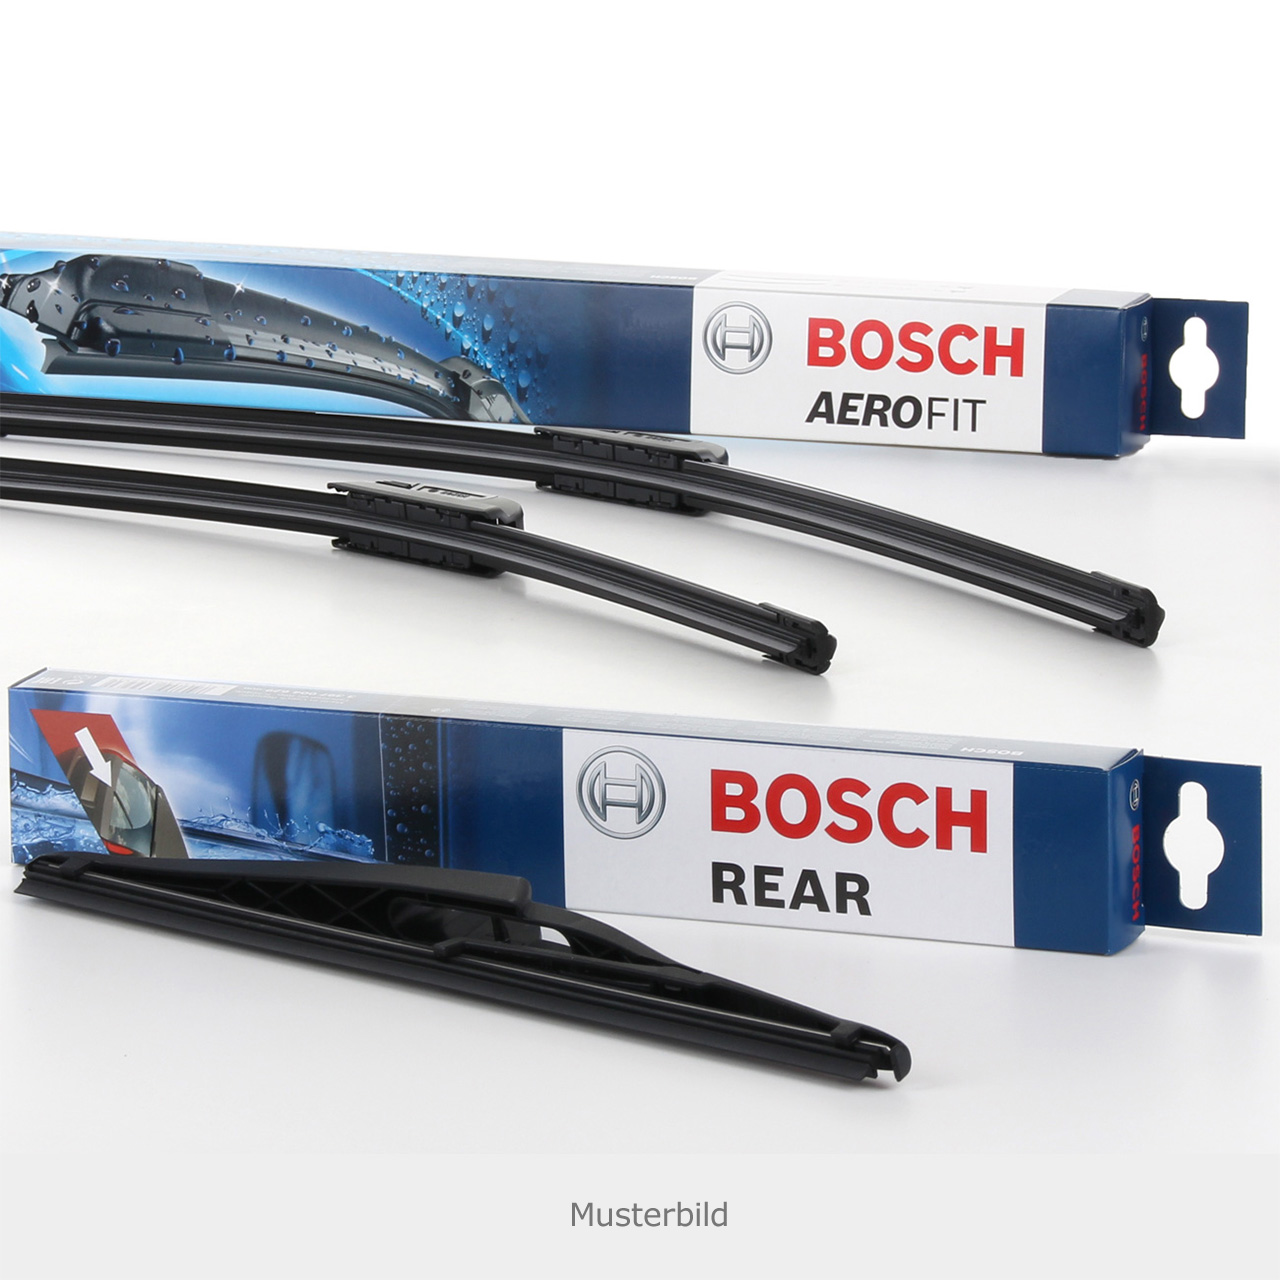 2008-2017 BOSCH Twin Metallbügelwischer Scheibenwischer Set Satz für Opel Insignia/Sports Tourer 